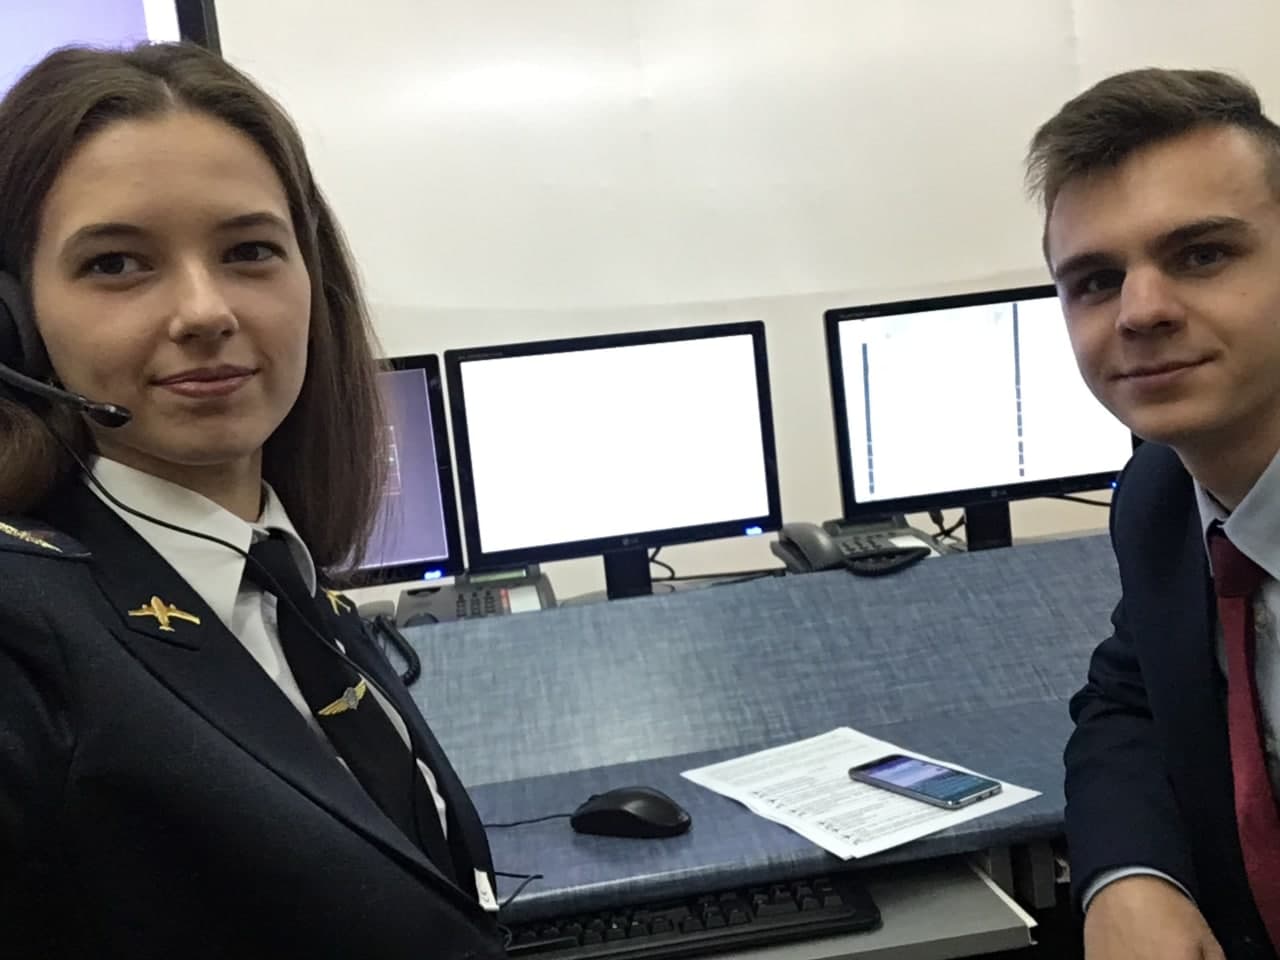 Обучение на авиадиспетчера в Национальном Авиационном Университете. Киев